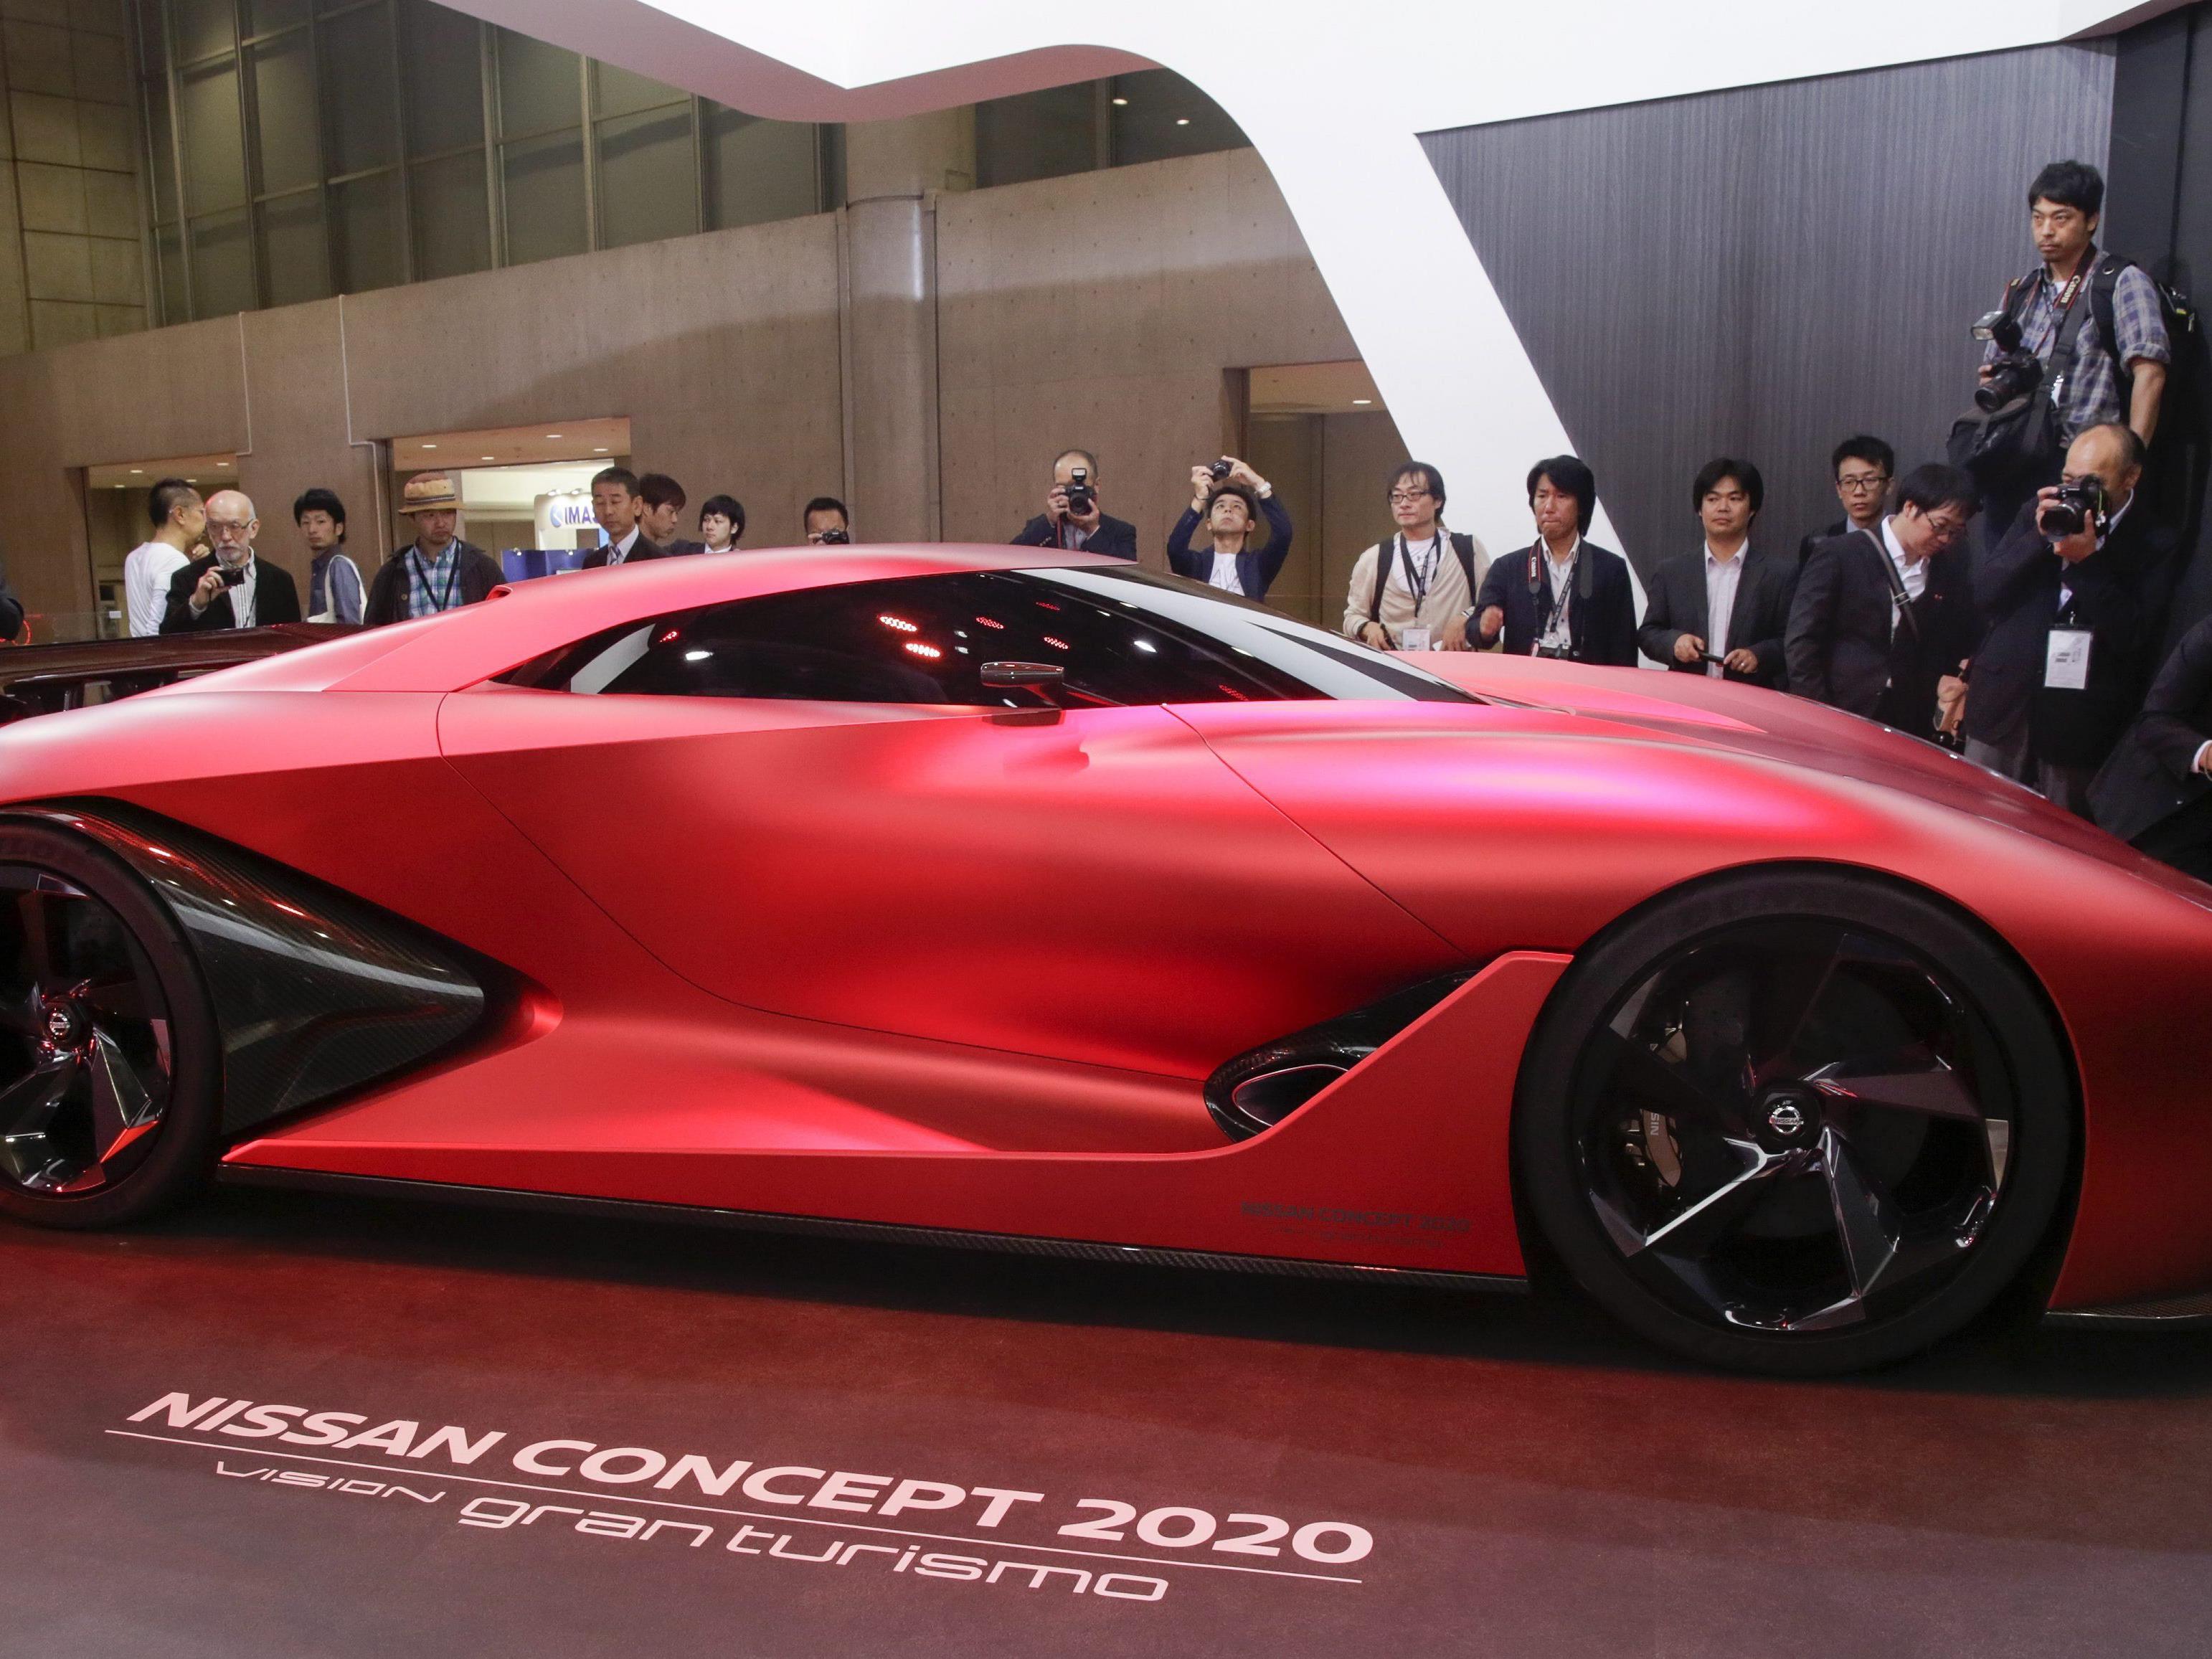 Nissan erregt Aufsehen mit dem Nissan Concept 2020 Vision Grand Tourismo